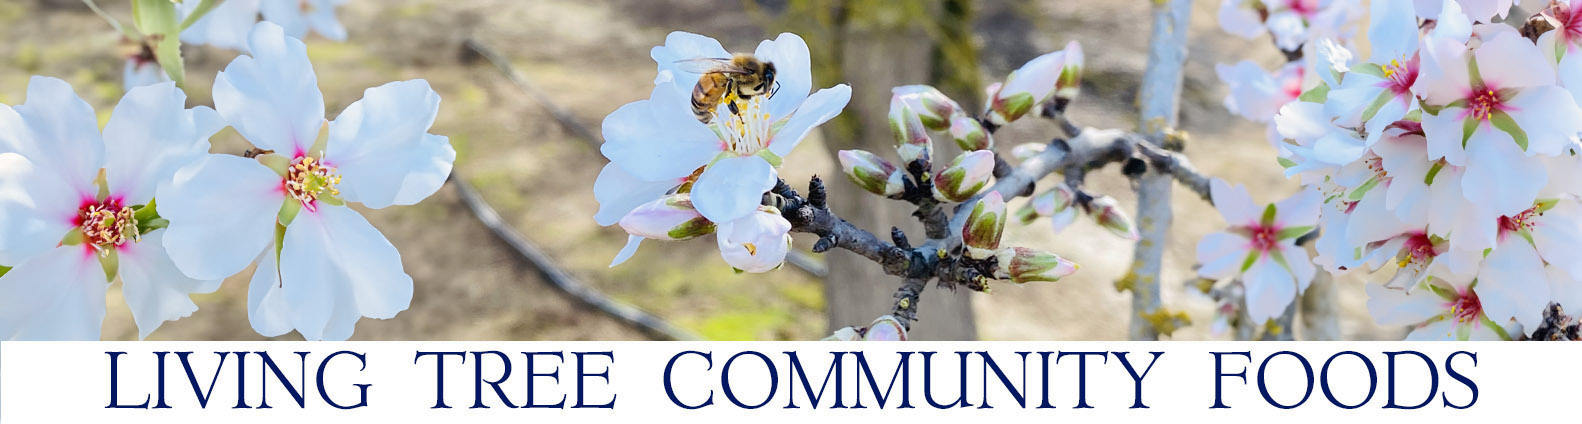 Almond Blossom Newsletter Header